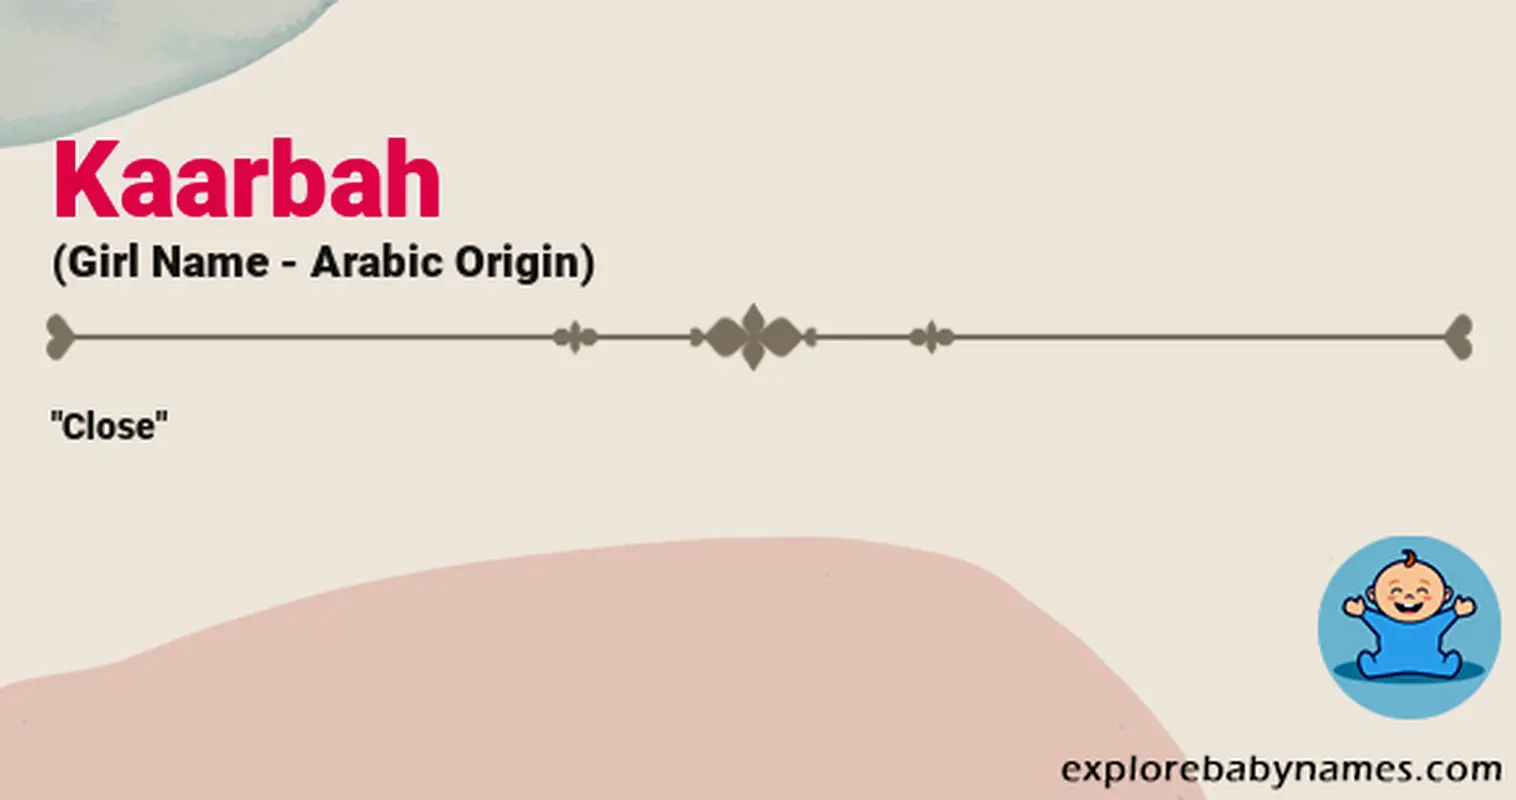 Meaning of Kaarbah